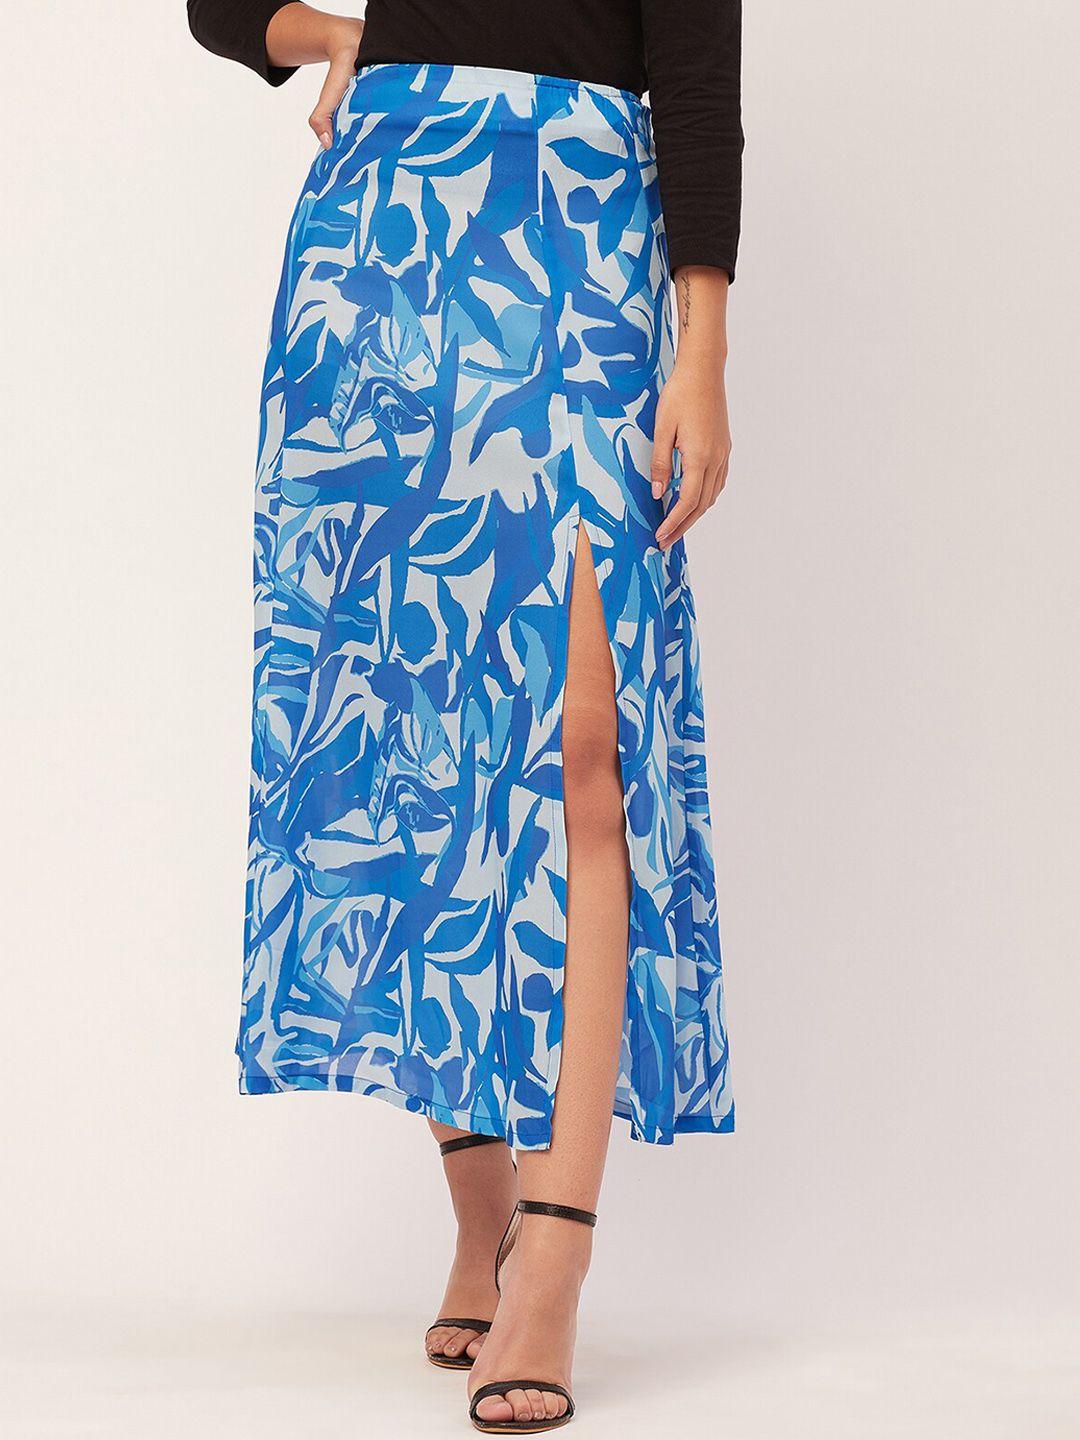 moomaya abstract printed side slit a line skirts